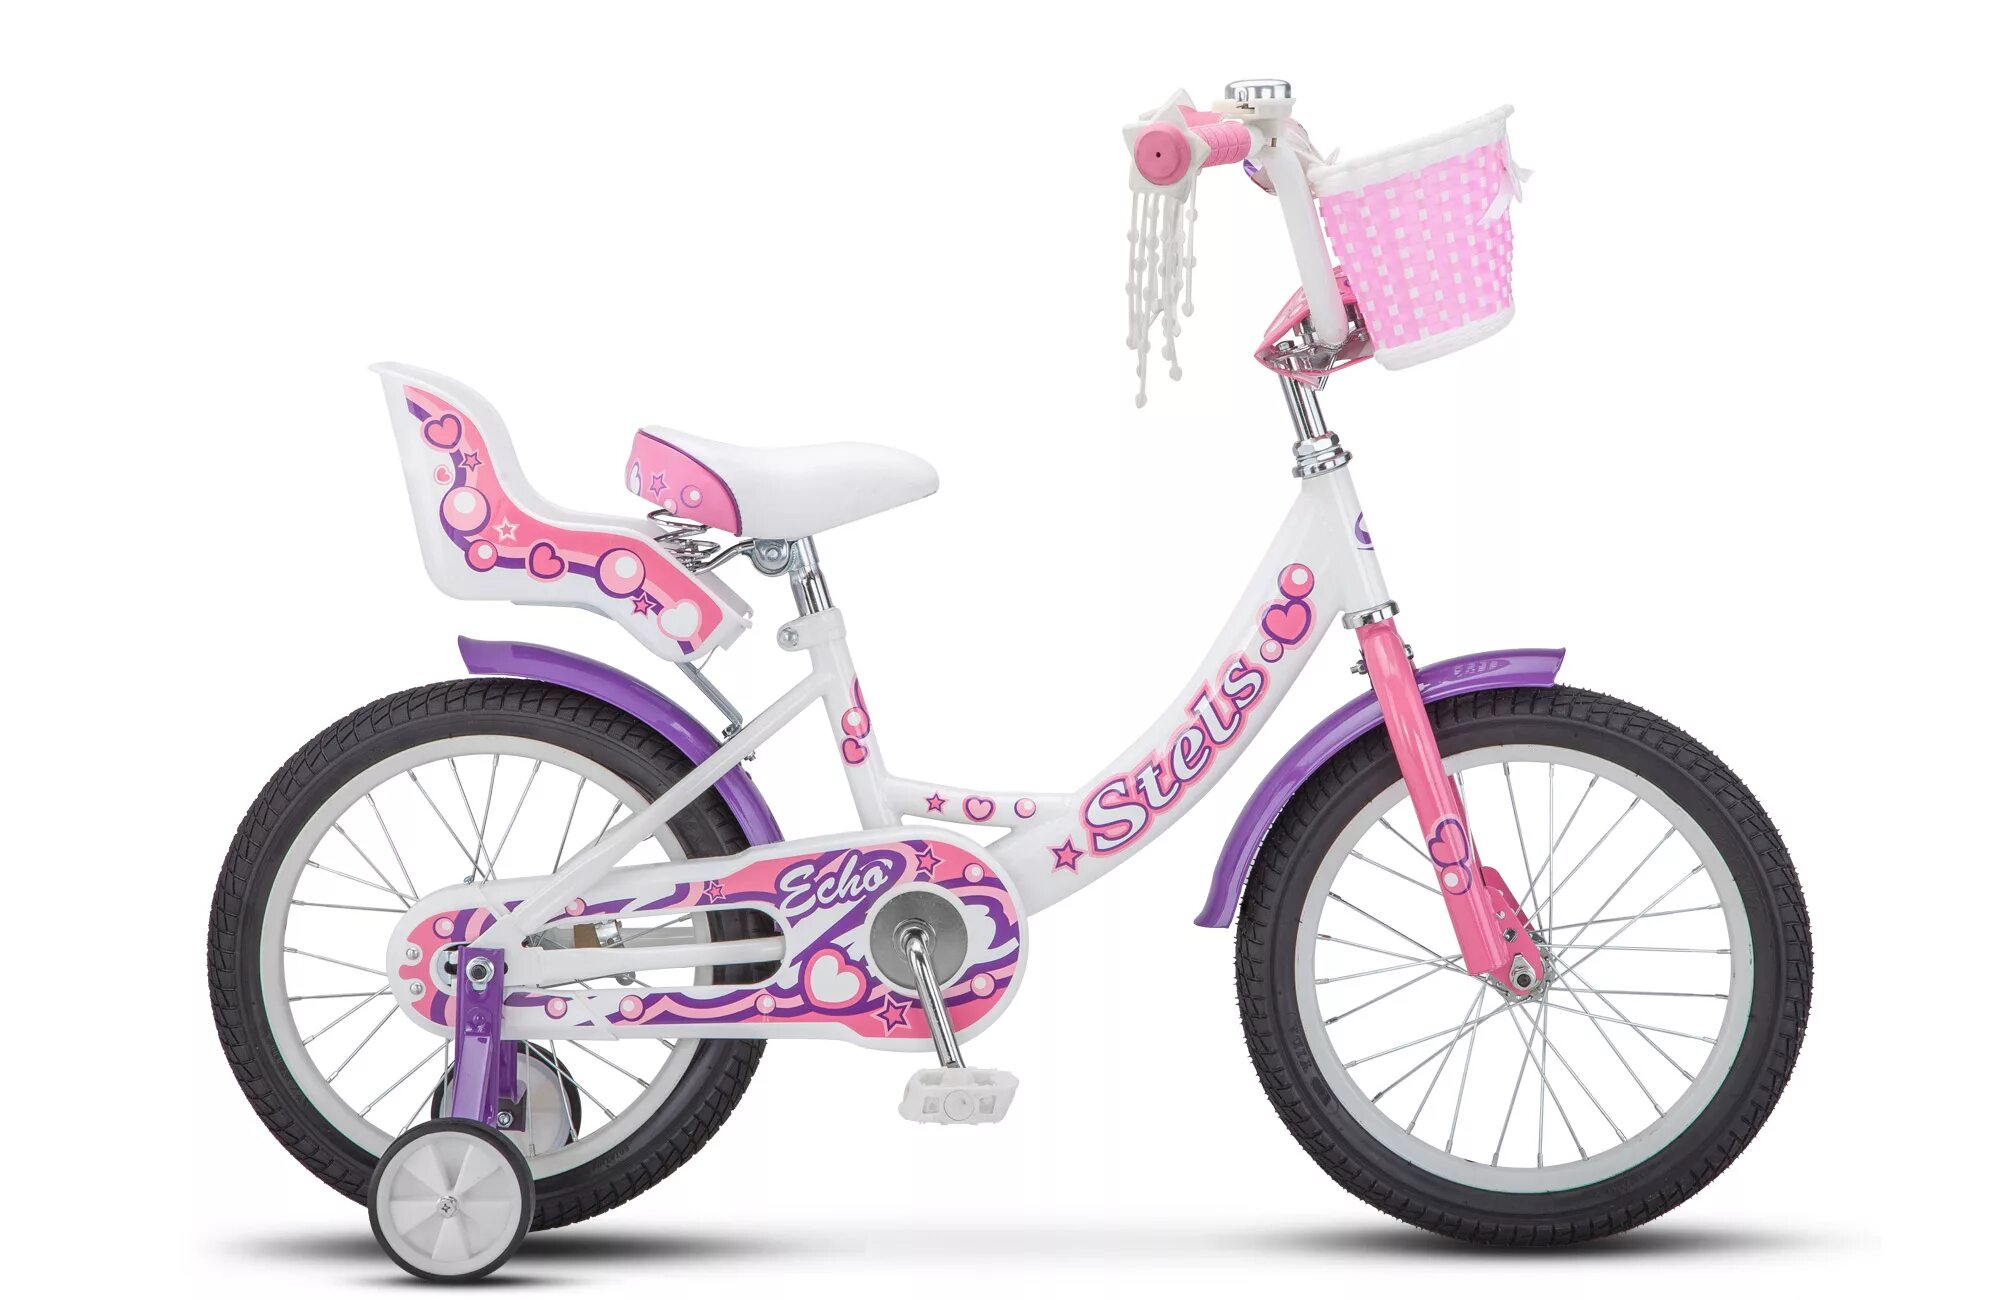 Велосипед для девочки 14 дюймов. Stels Echo 16 v020. Детский велосипед stels Echo 16 v020. Велосипед для девочки stels Echo 16. Стелс Эхо 16 розовый.